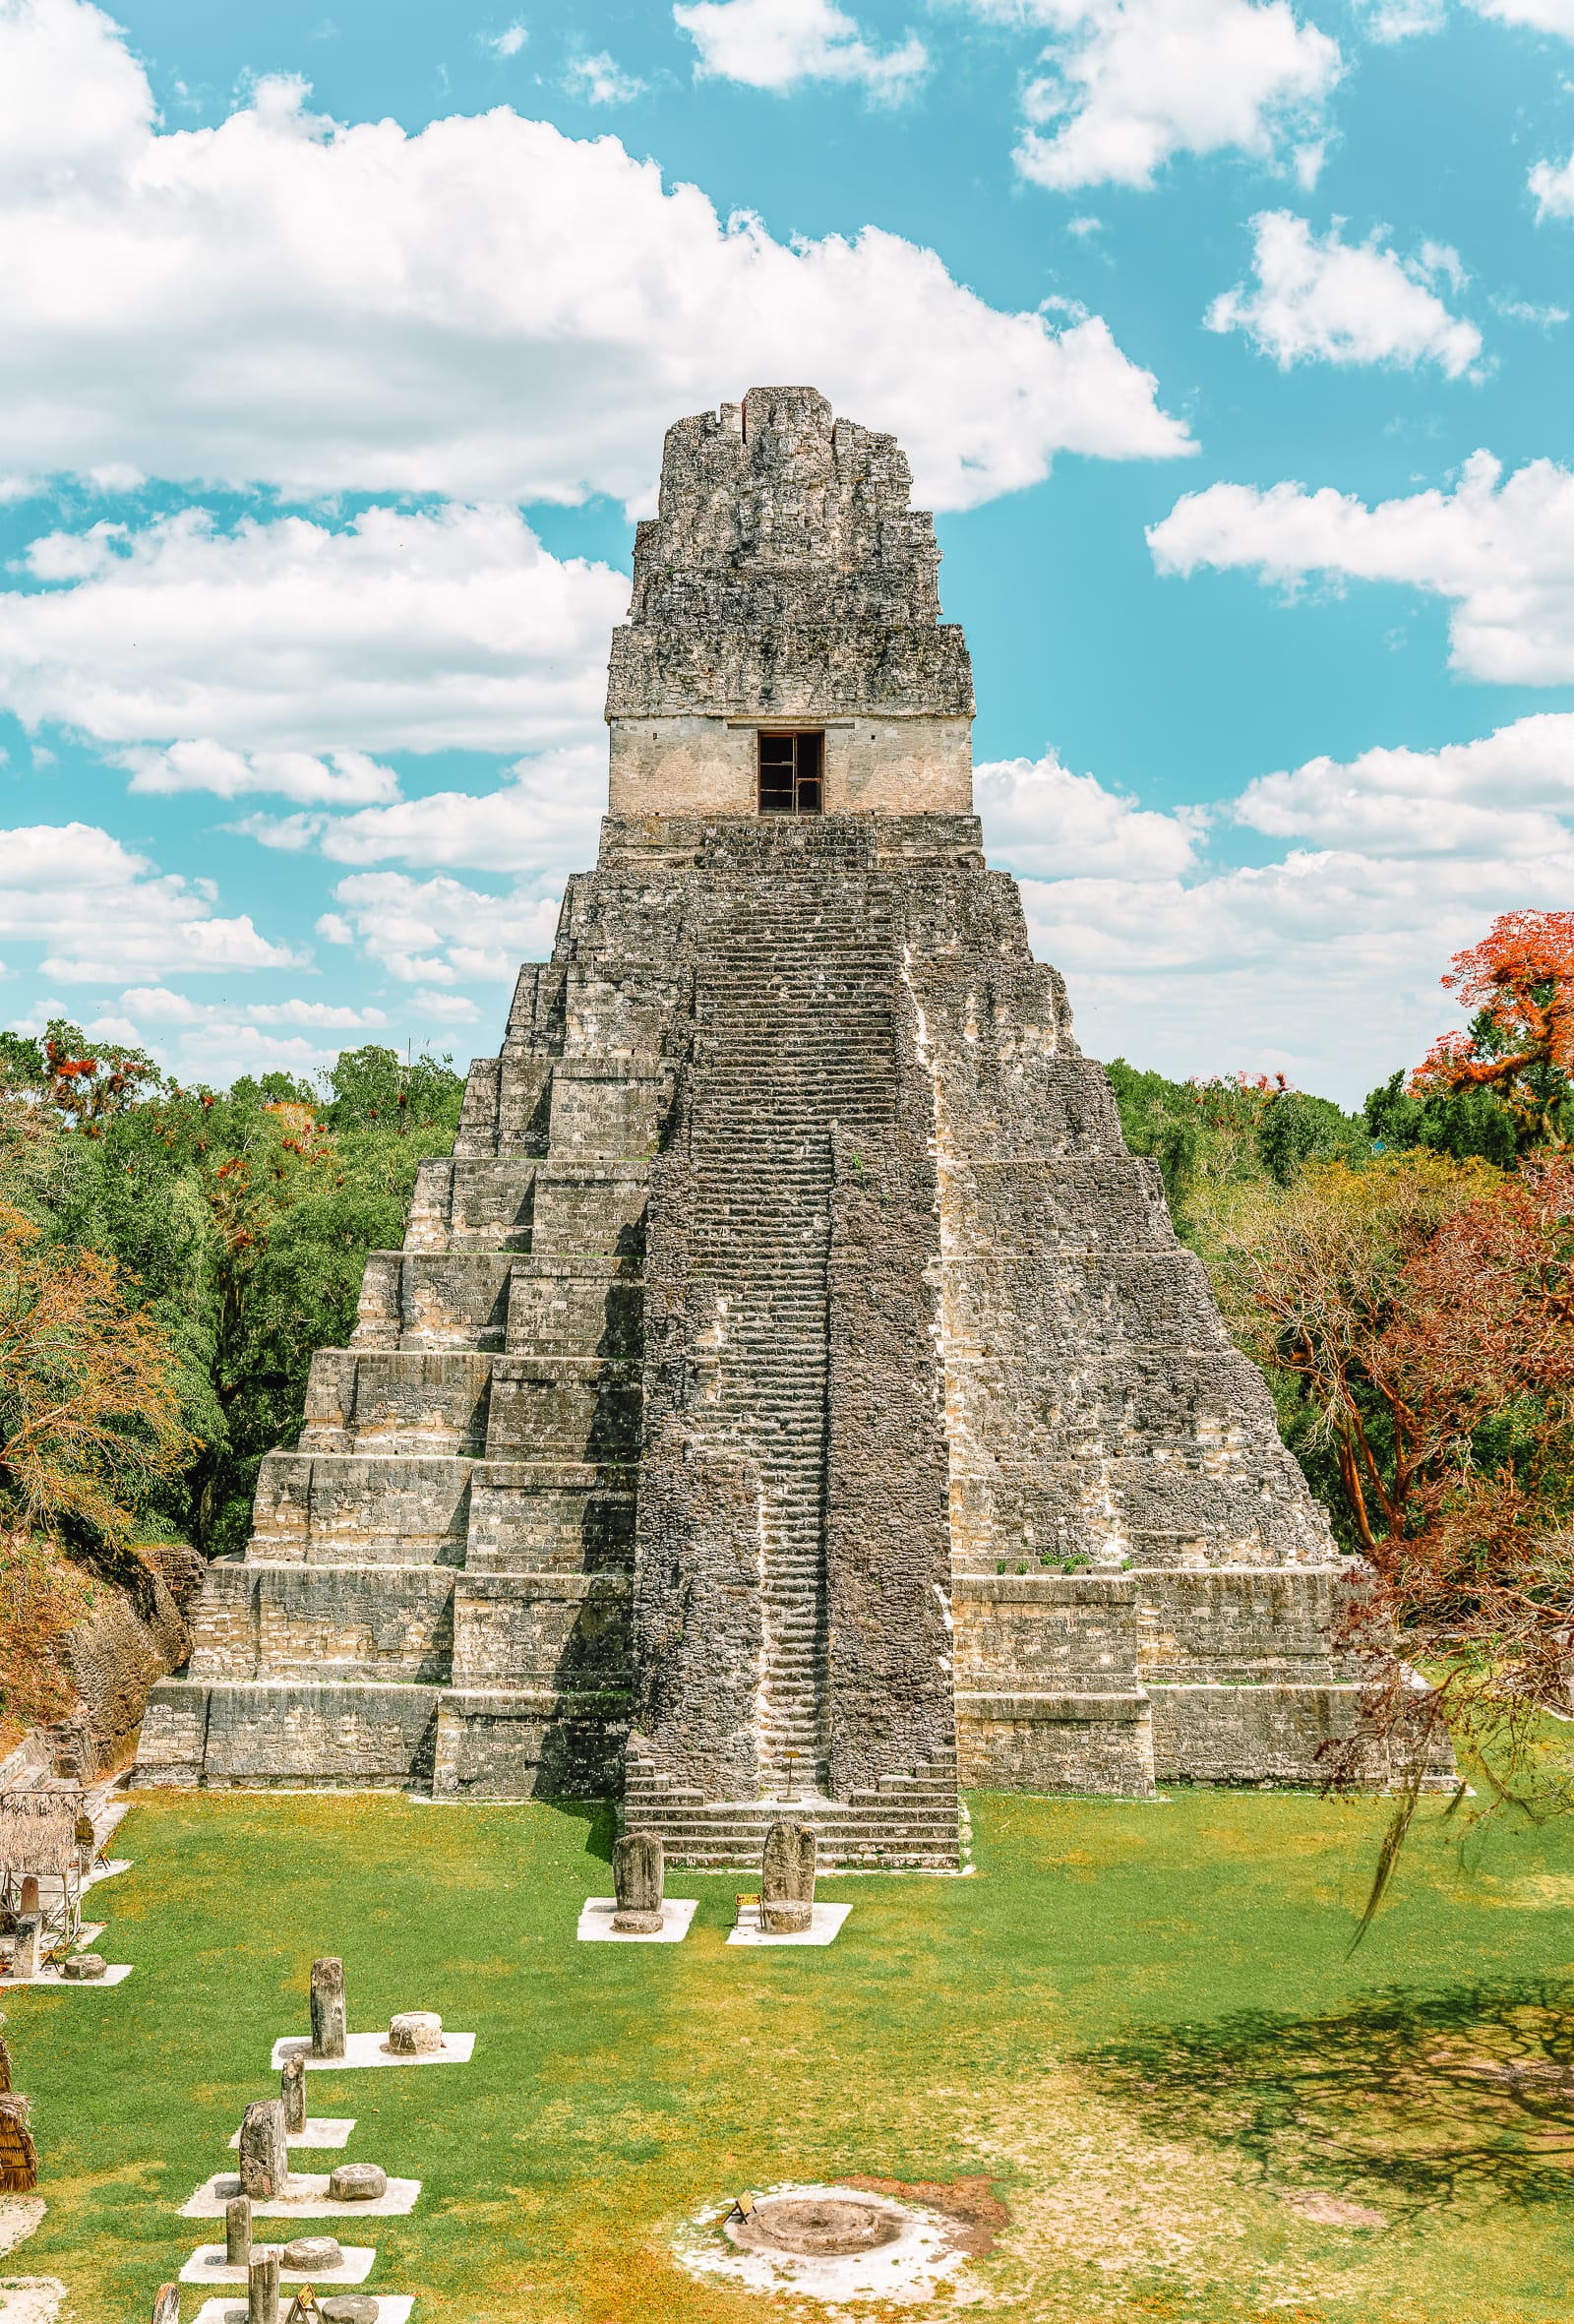 Visiting The Guatemala Mayan Ruins